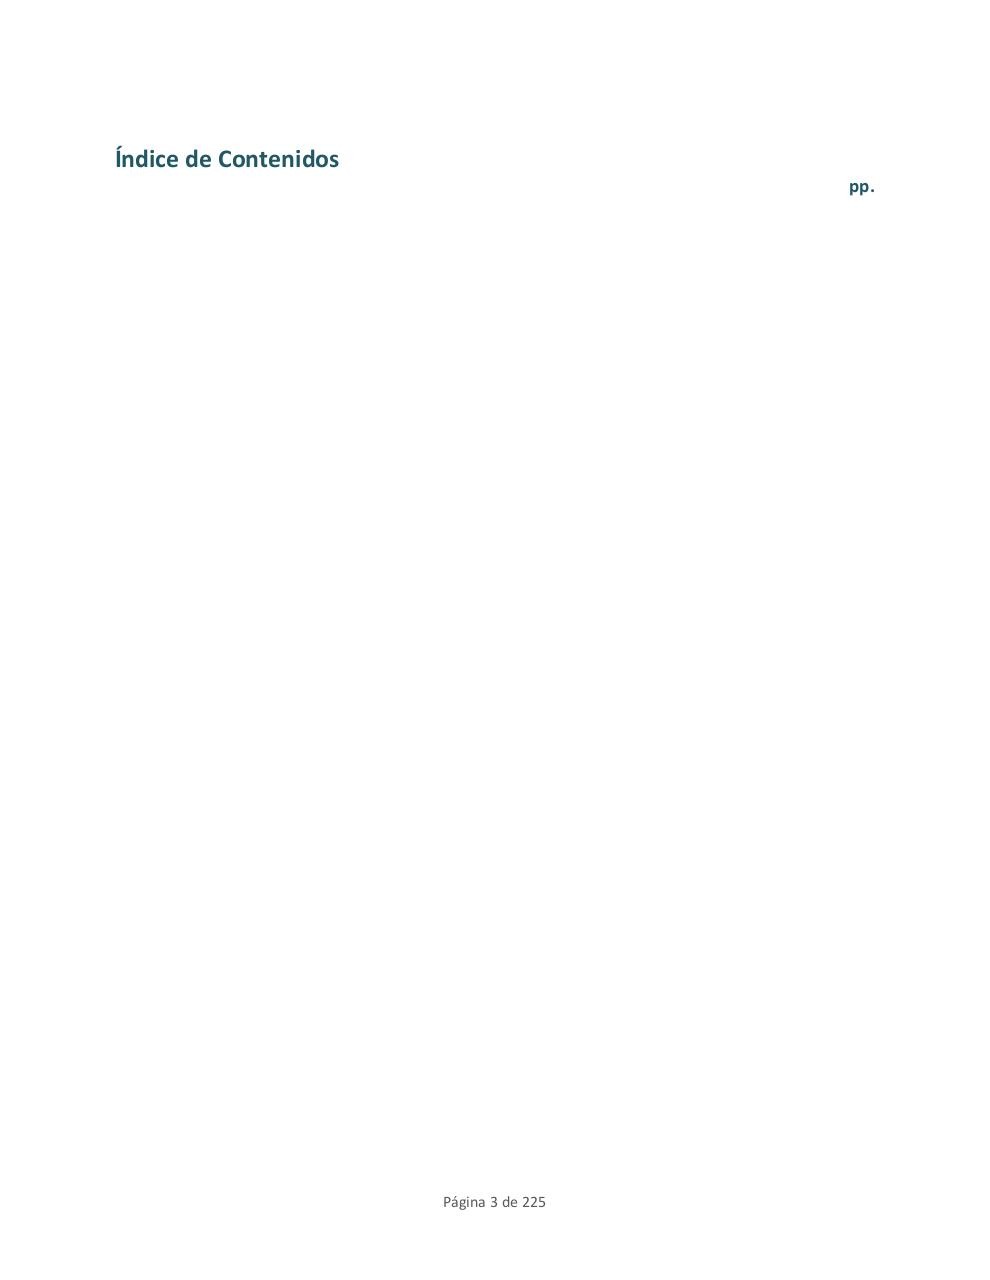 EVALUACION FINAL DE RIESGOS Y PROPUESTA.pdf - page 3/225